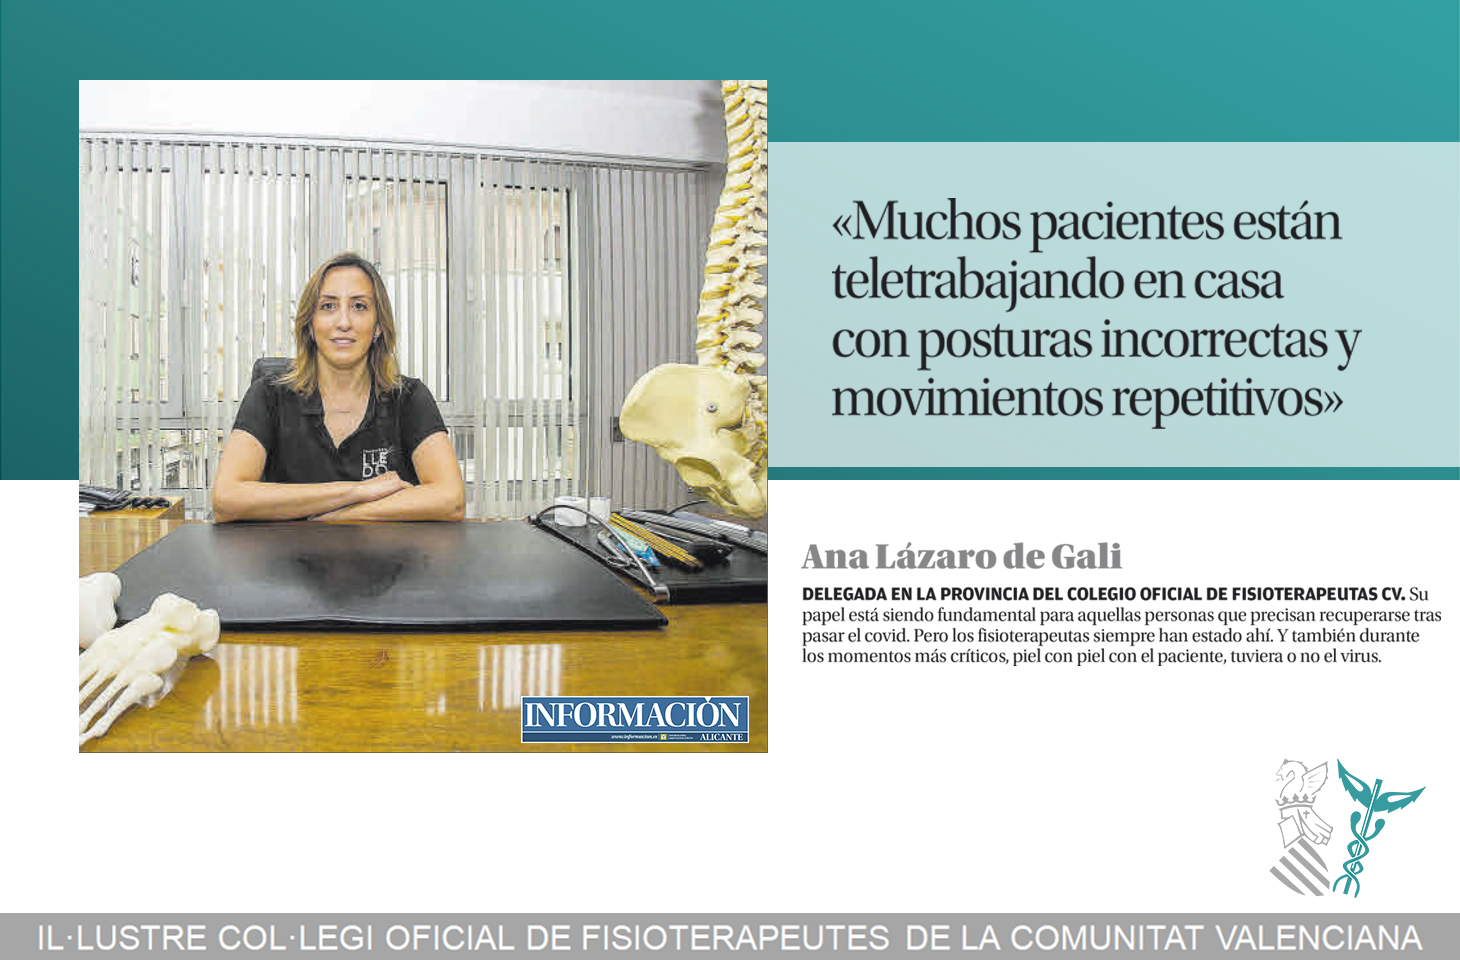 Ana Lázaro: "Muchos pacientes están teletrabajando en casa con posturas incorrectas y movimientos repetitivos"